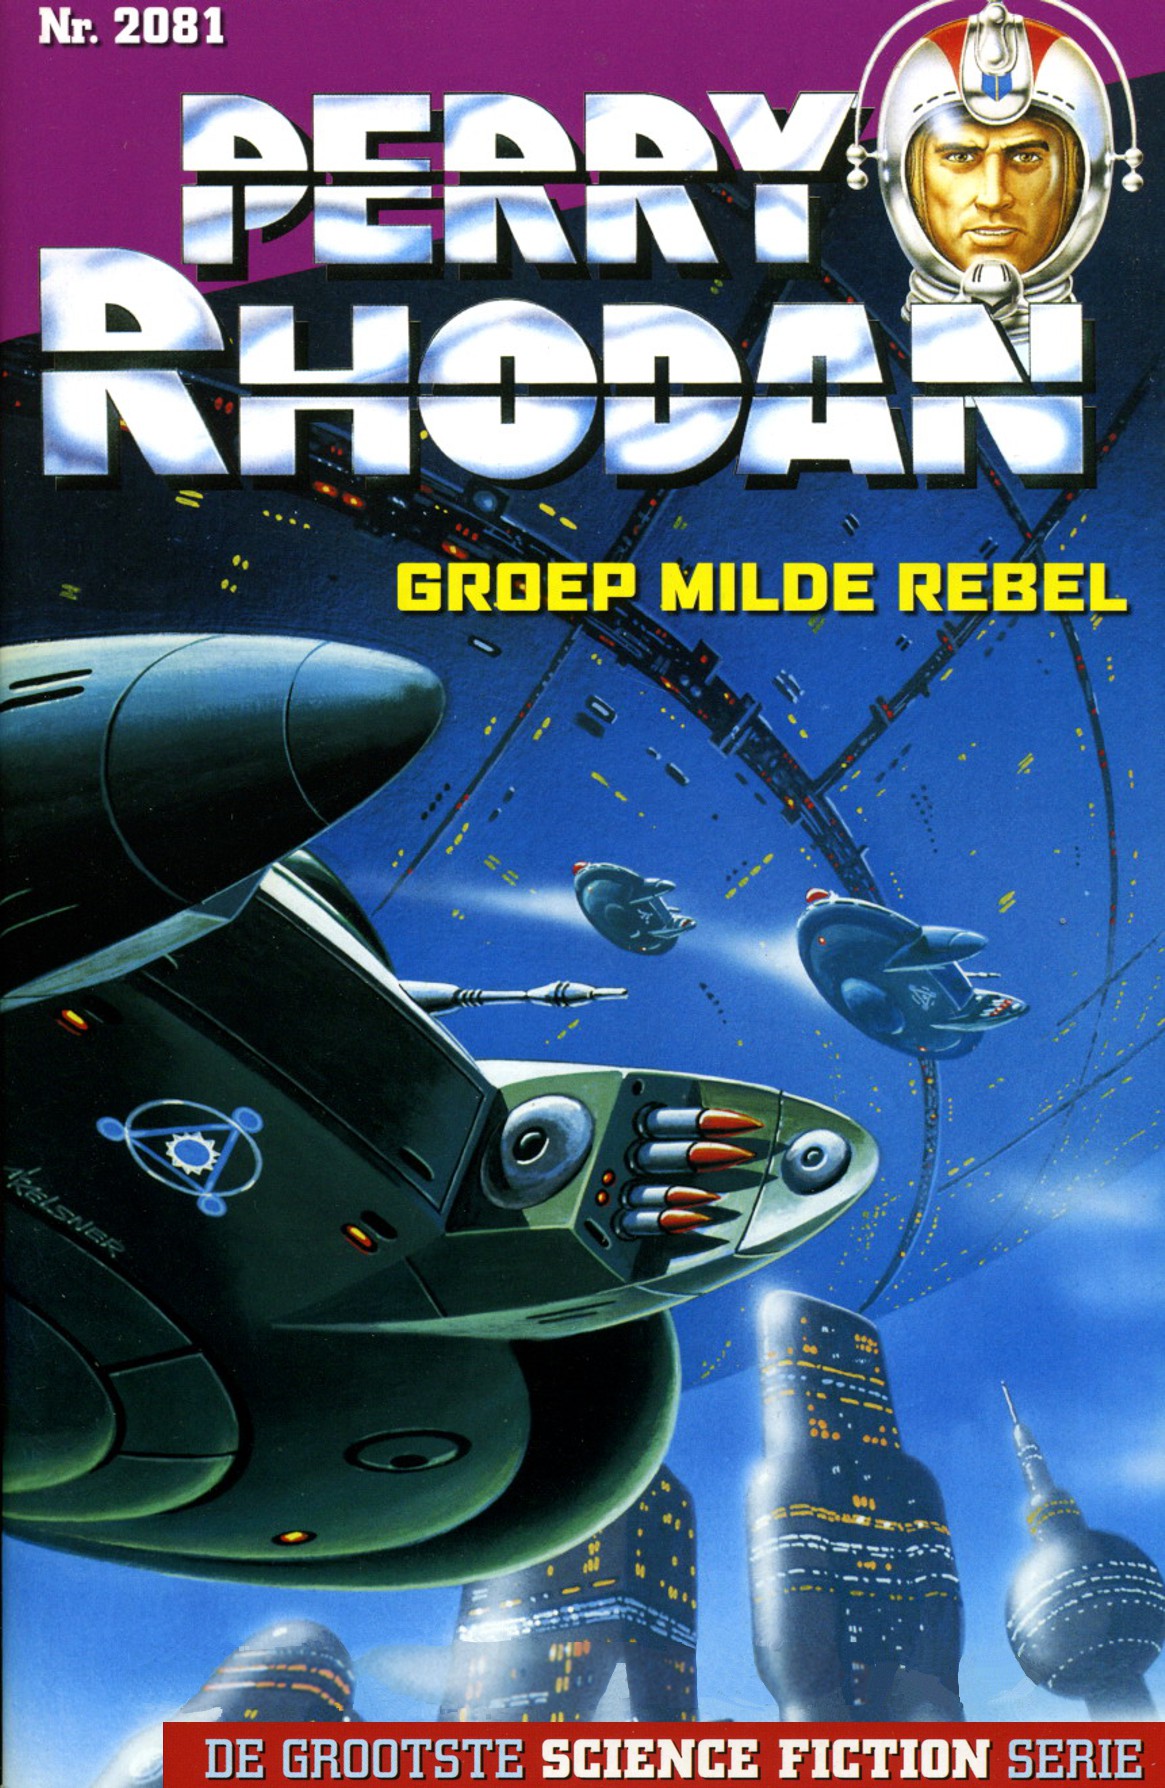 Perry Rhodan 2081 - Groep milde rebel